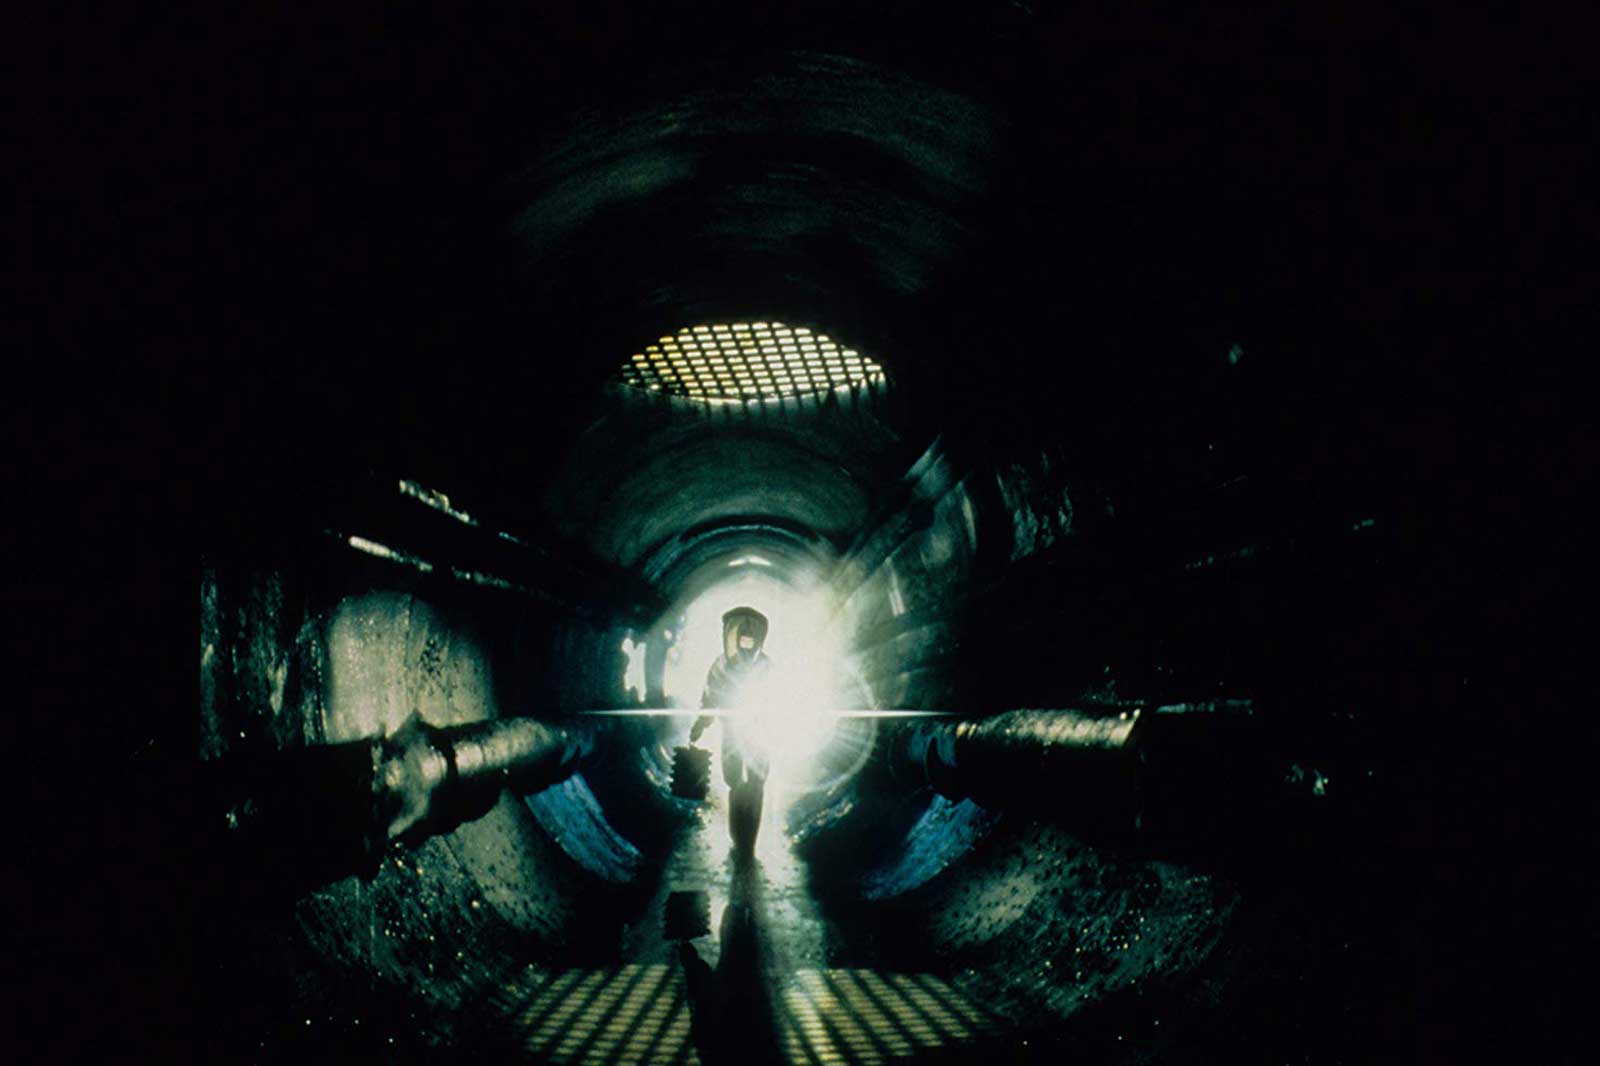 فیلم Mimic دل تورو و فرد قرارگرفته در مقابل نور انتهای تونل